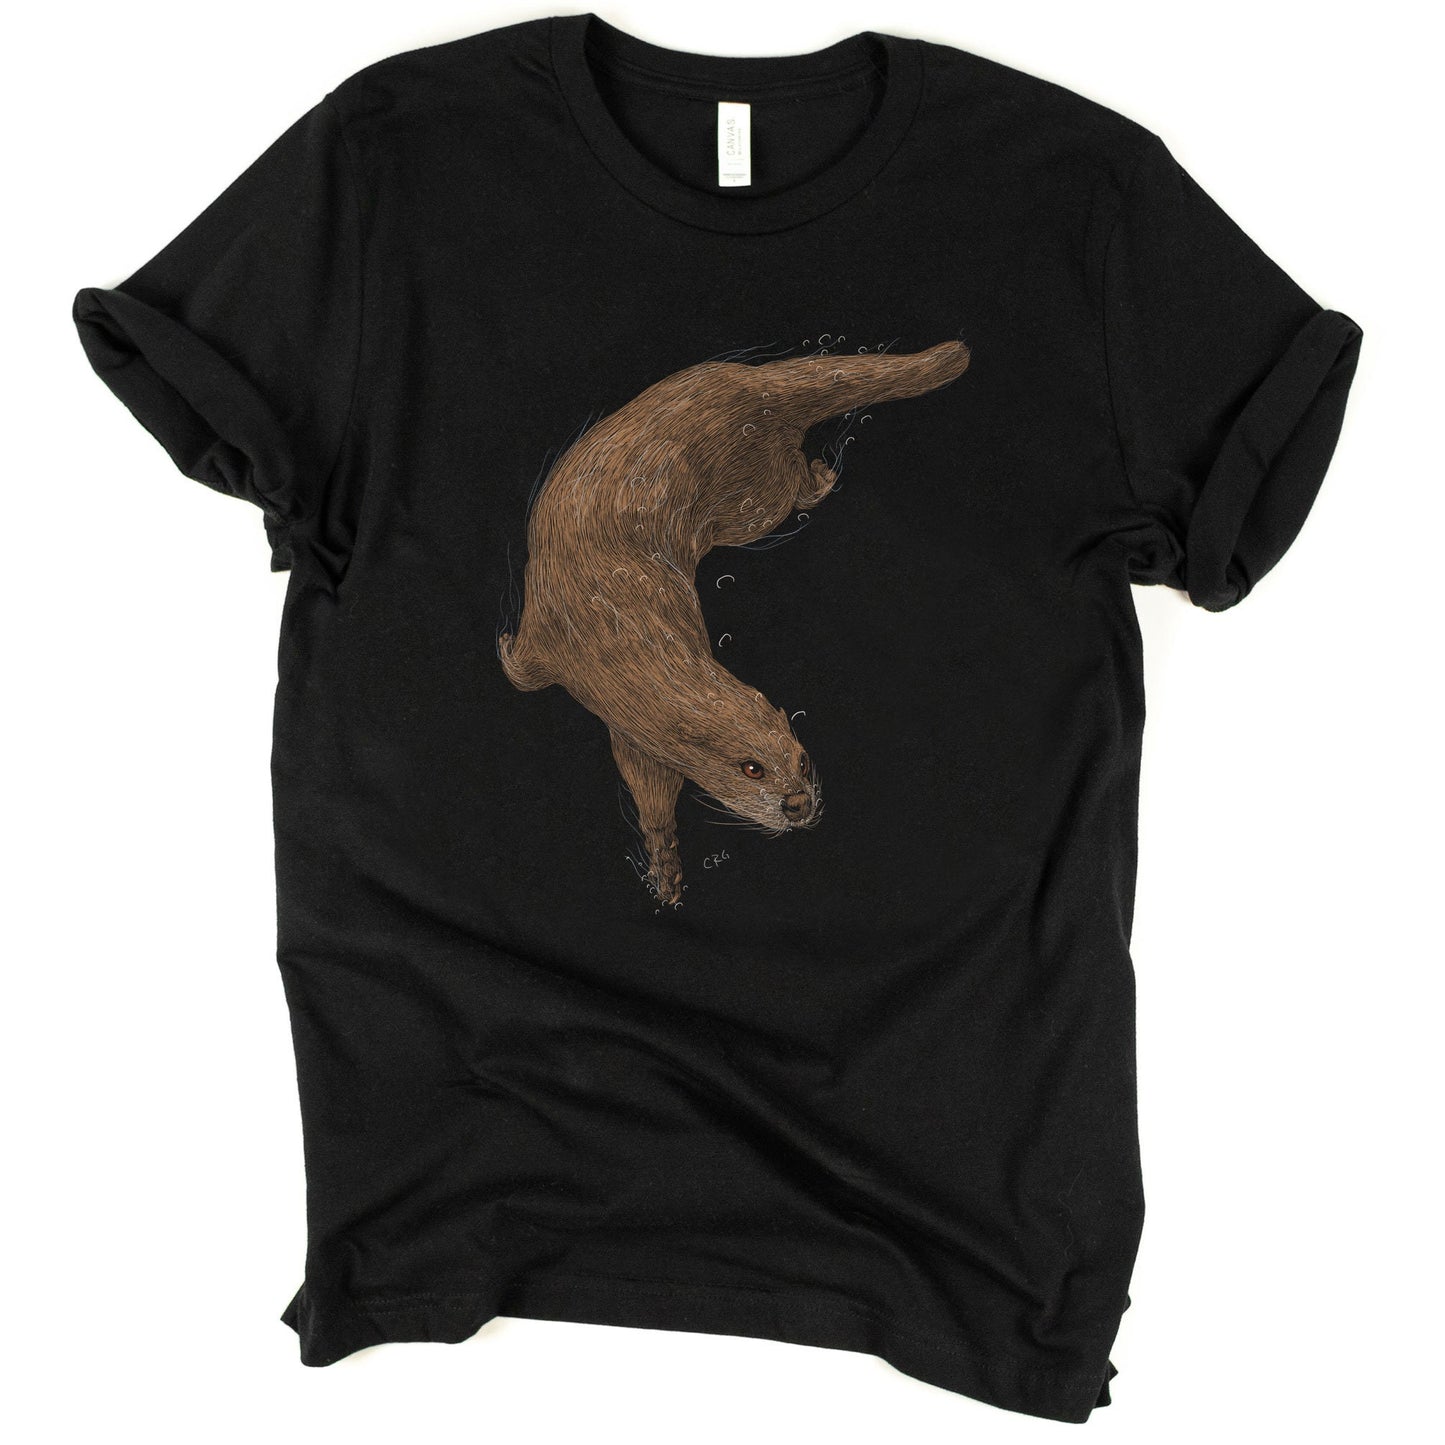 Otter Shirt